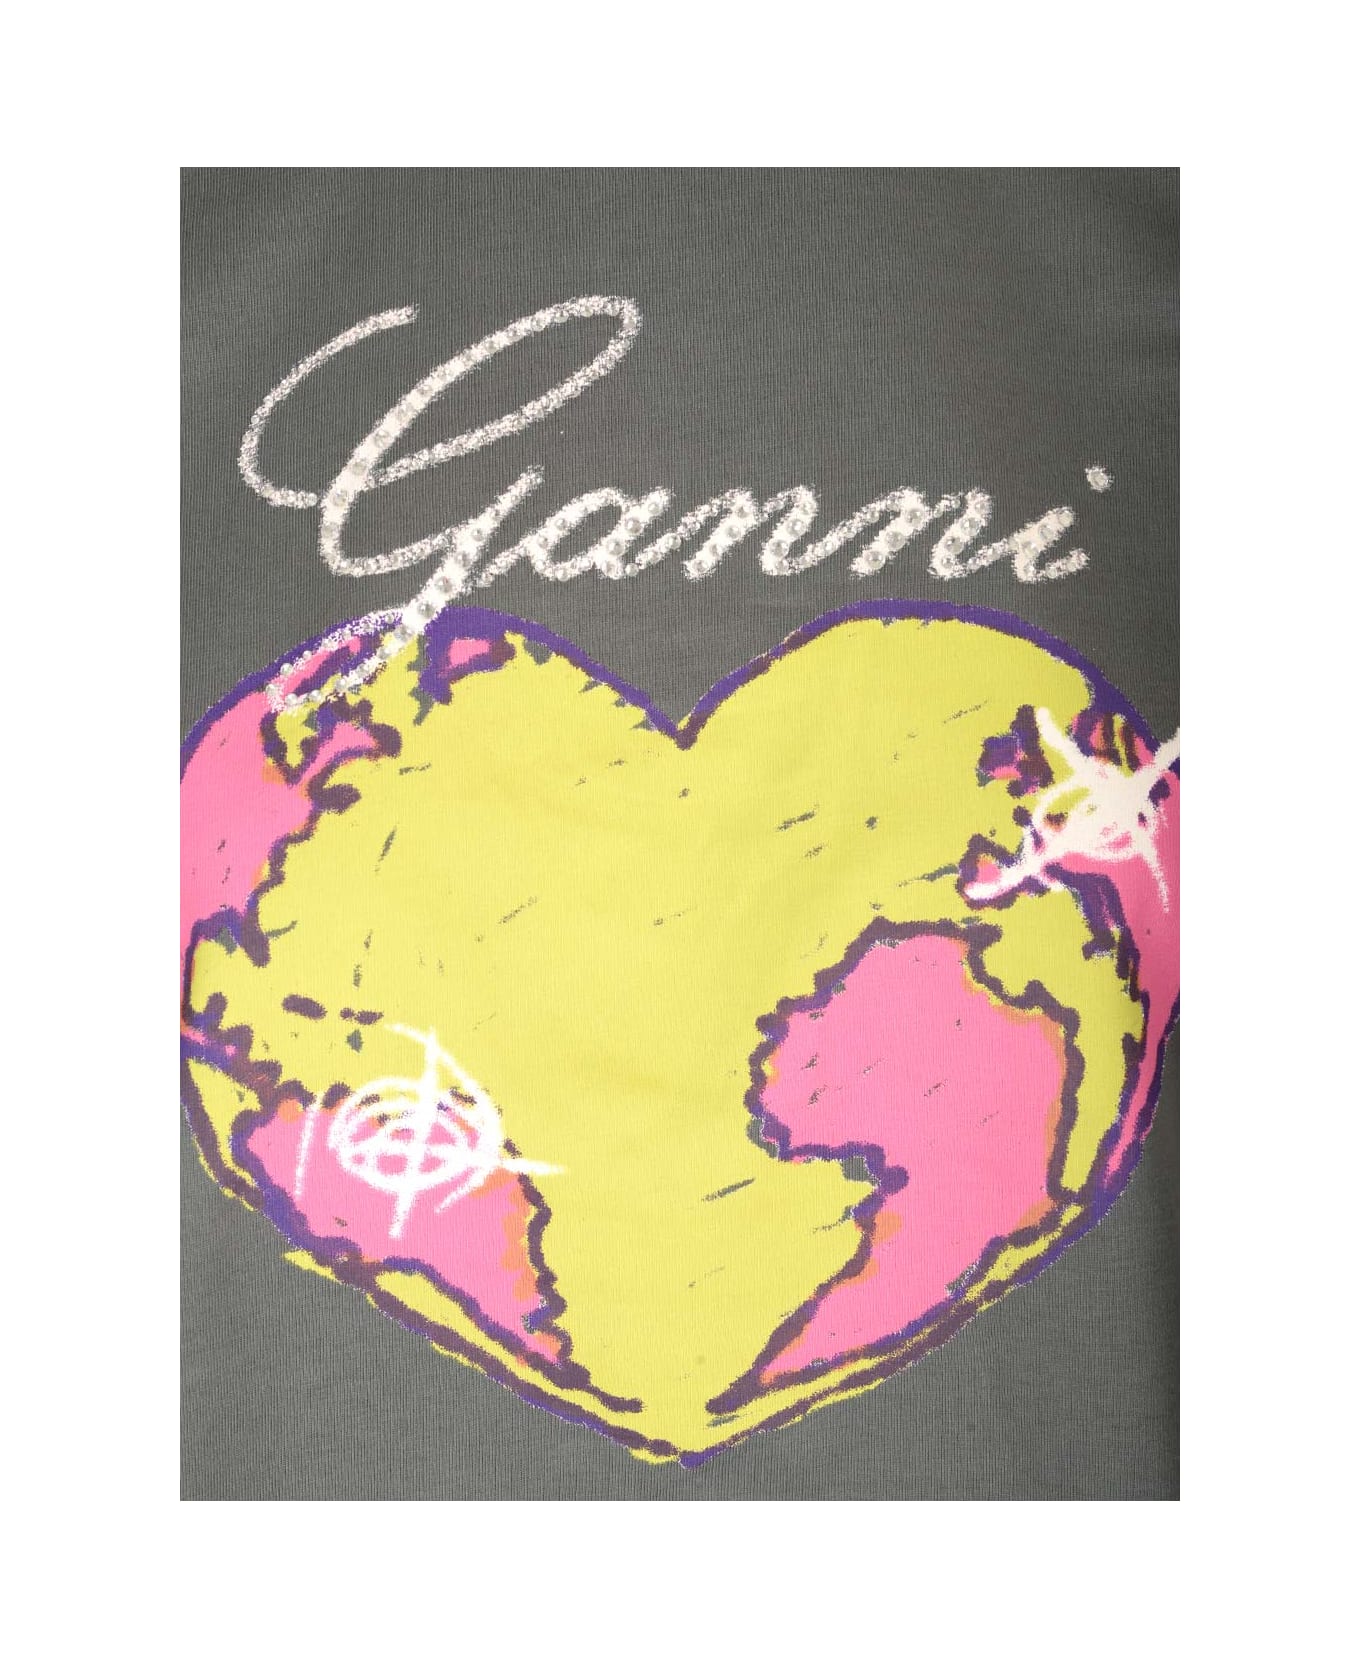 Ganni Grey T-shirt With Heart - Grey